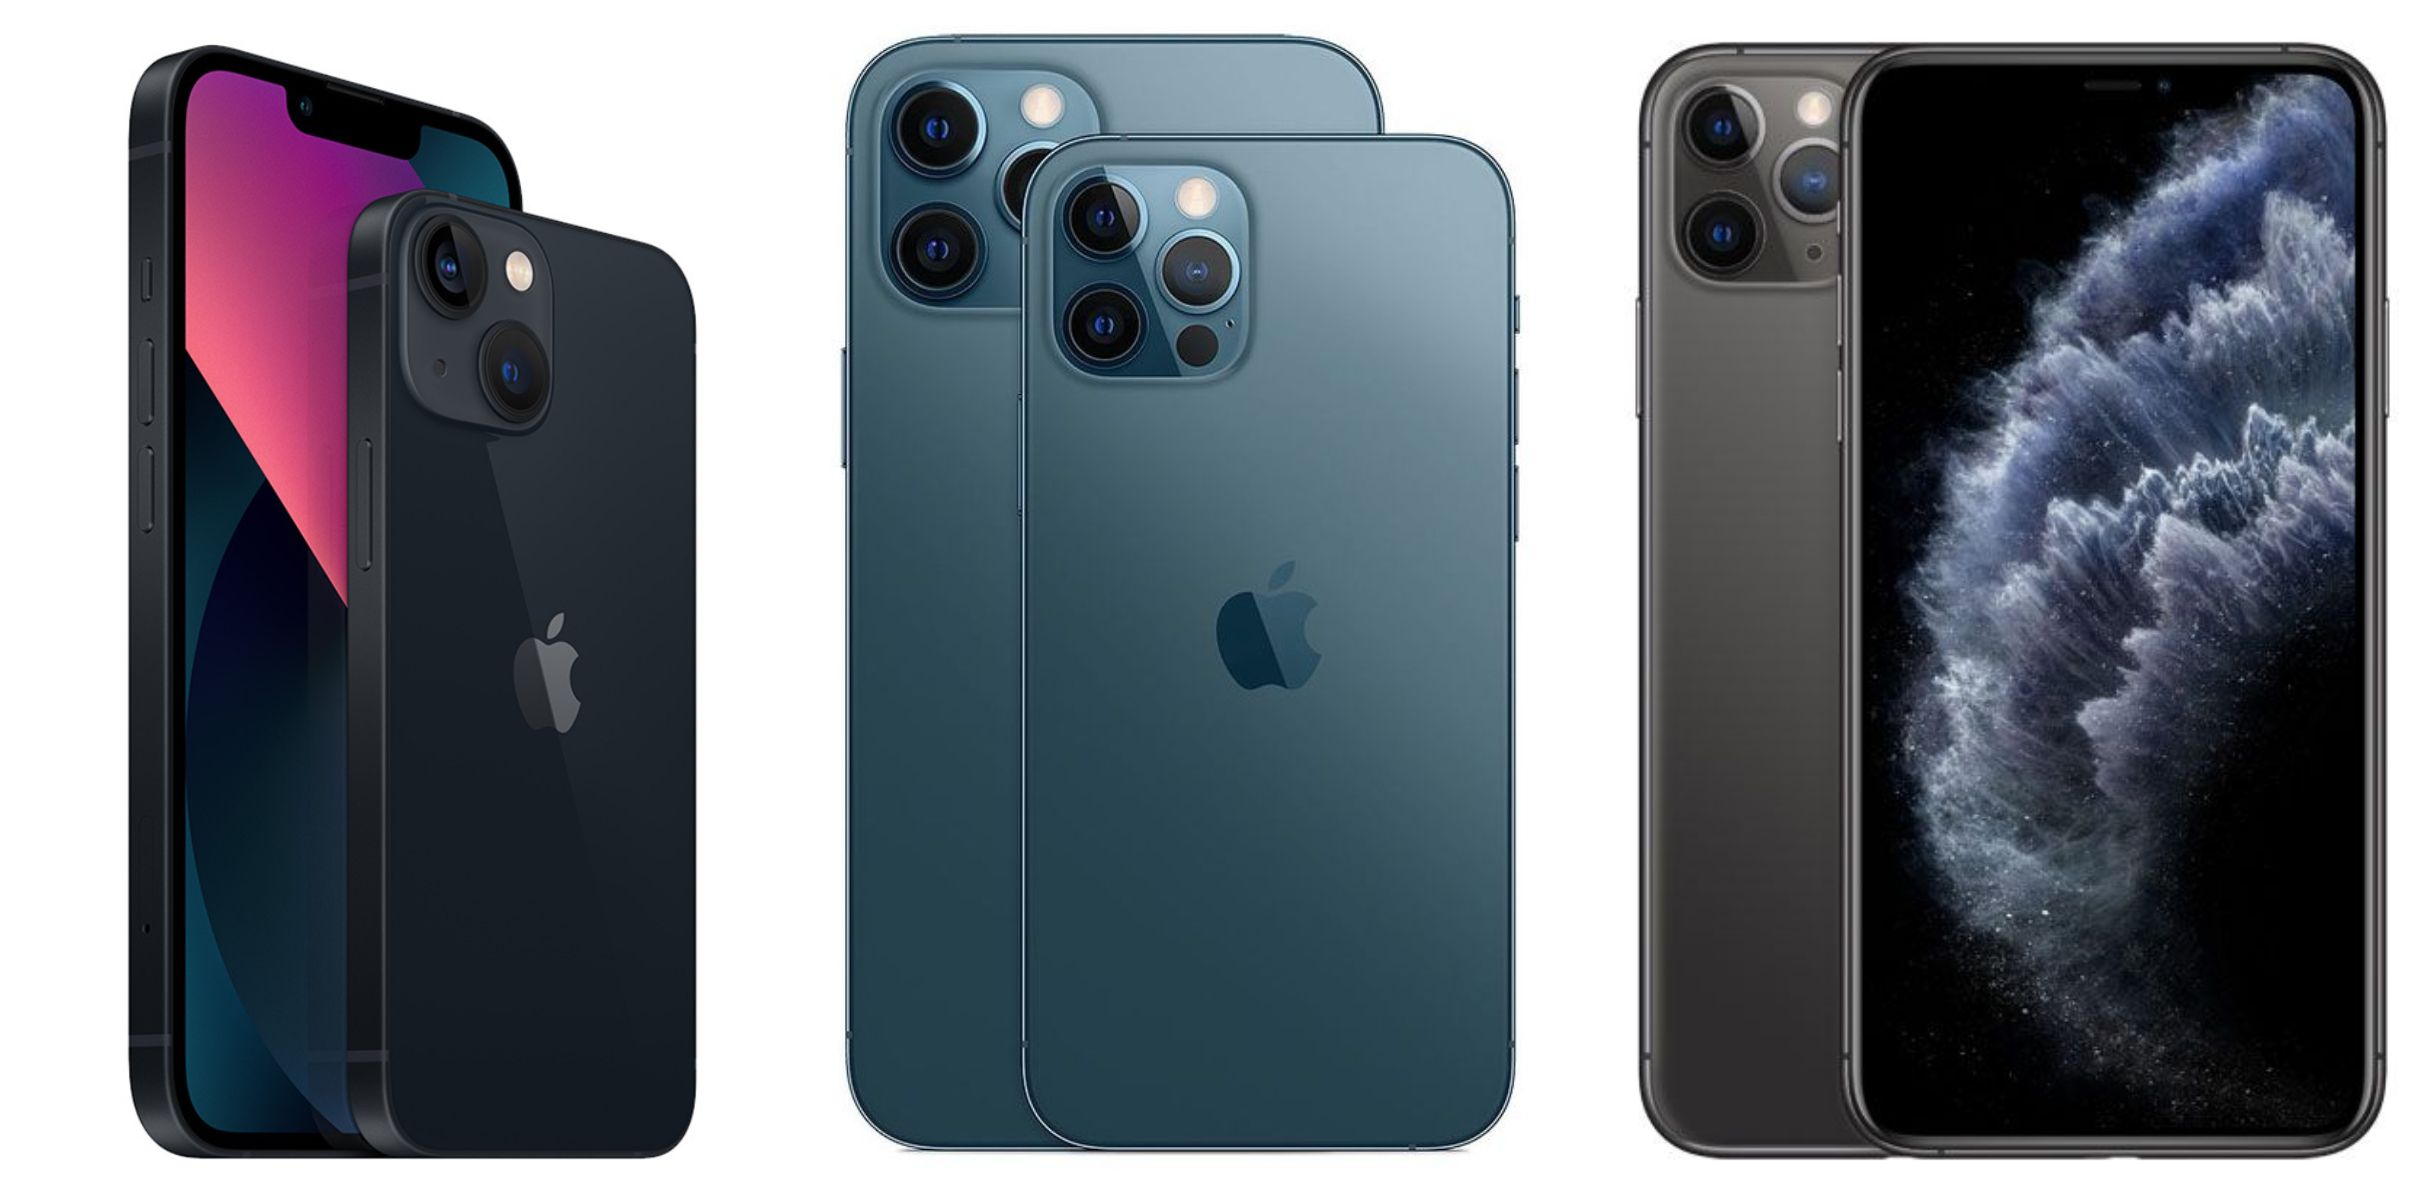 Harga iPhone XR Lengkap Tiga Varian Serta iPhone X dan iPhone XS, Semuanya Kini Sangat Murah Meriah